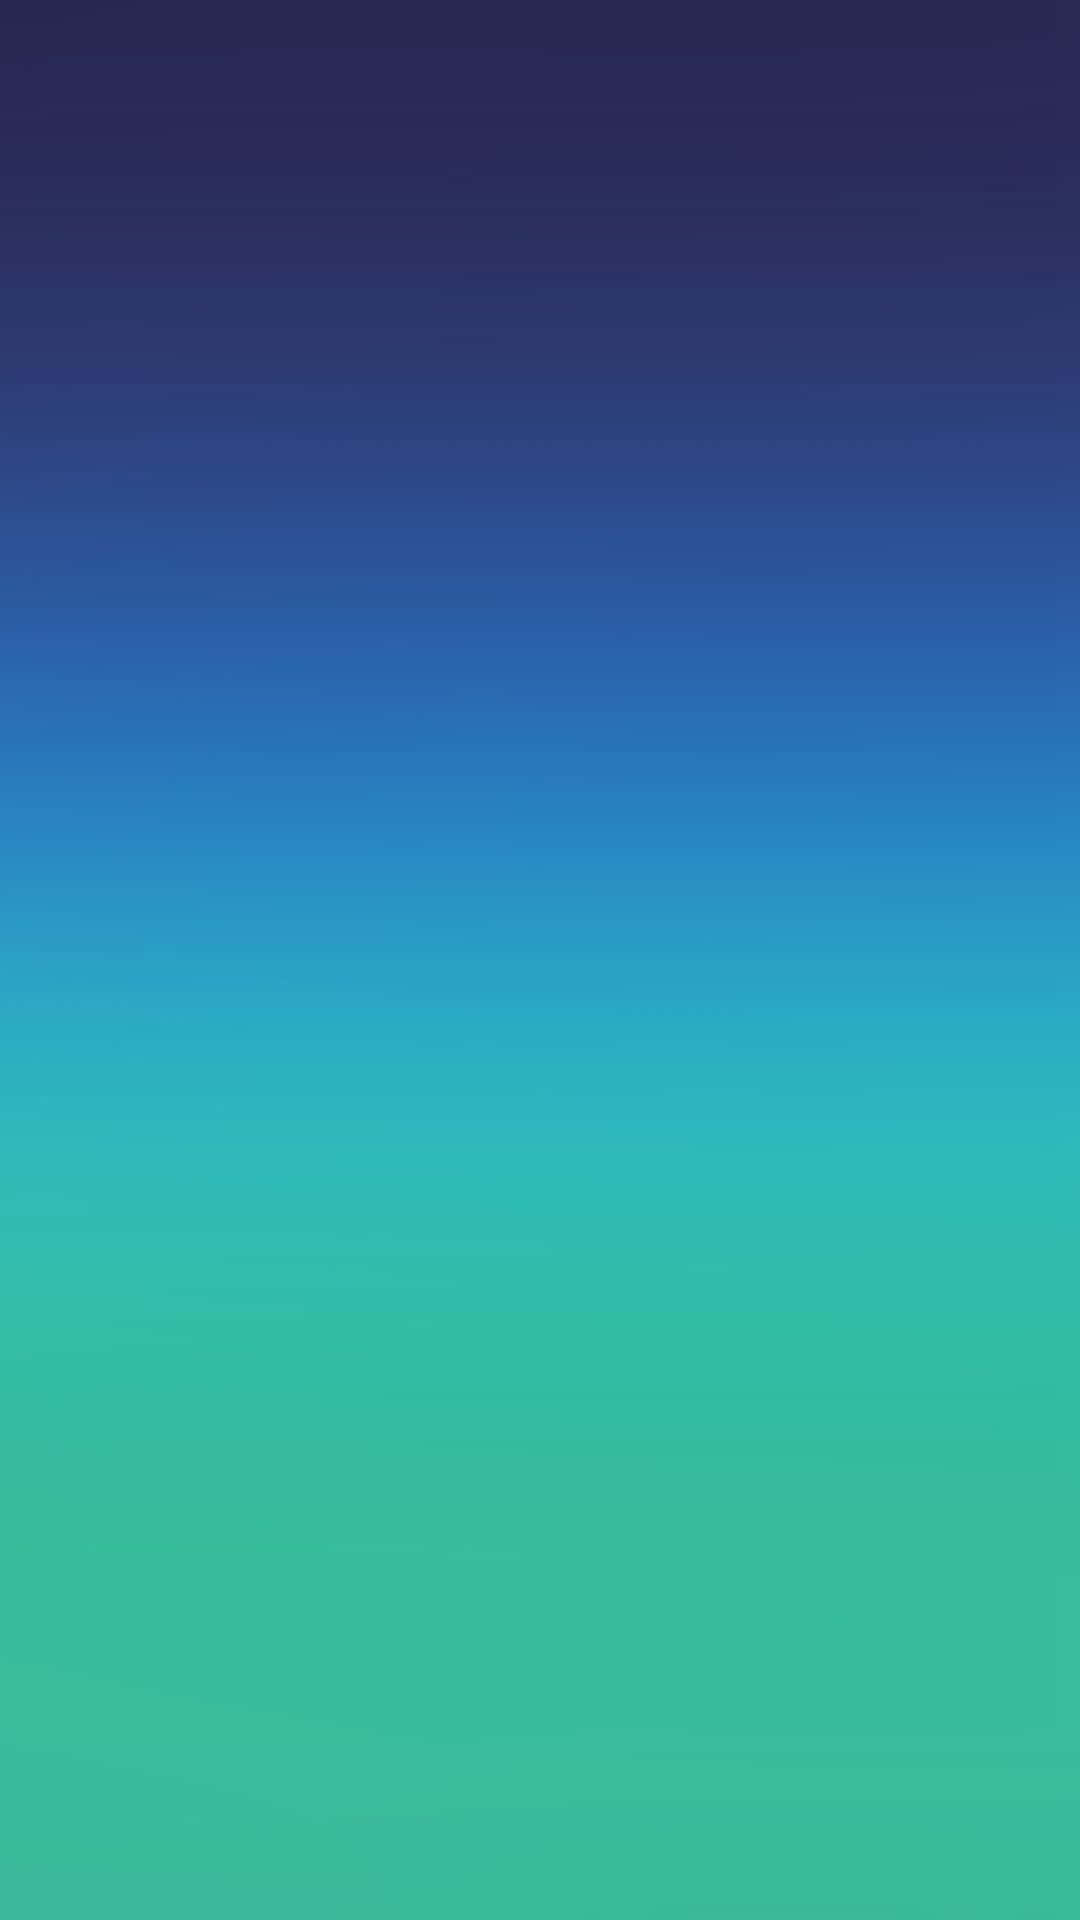 Unfondo Degradado En Azul Y Verde. Fondo de pantalla